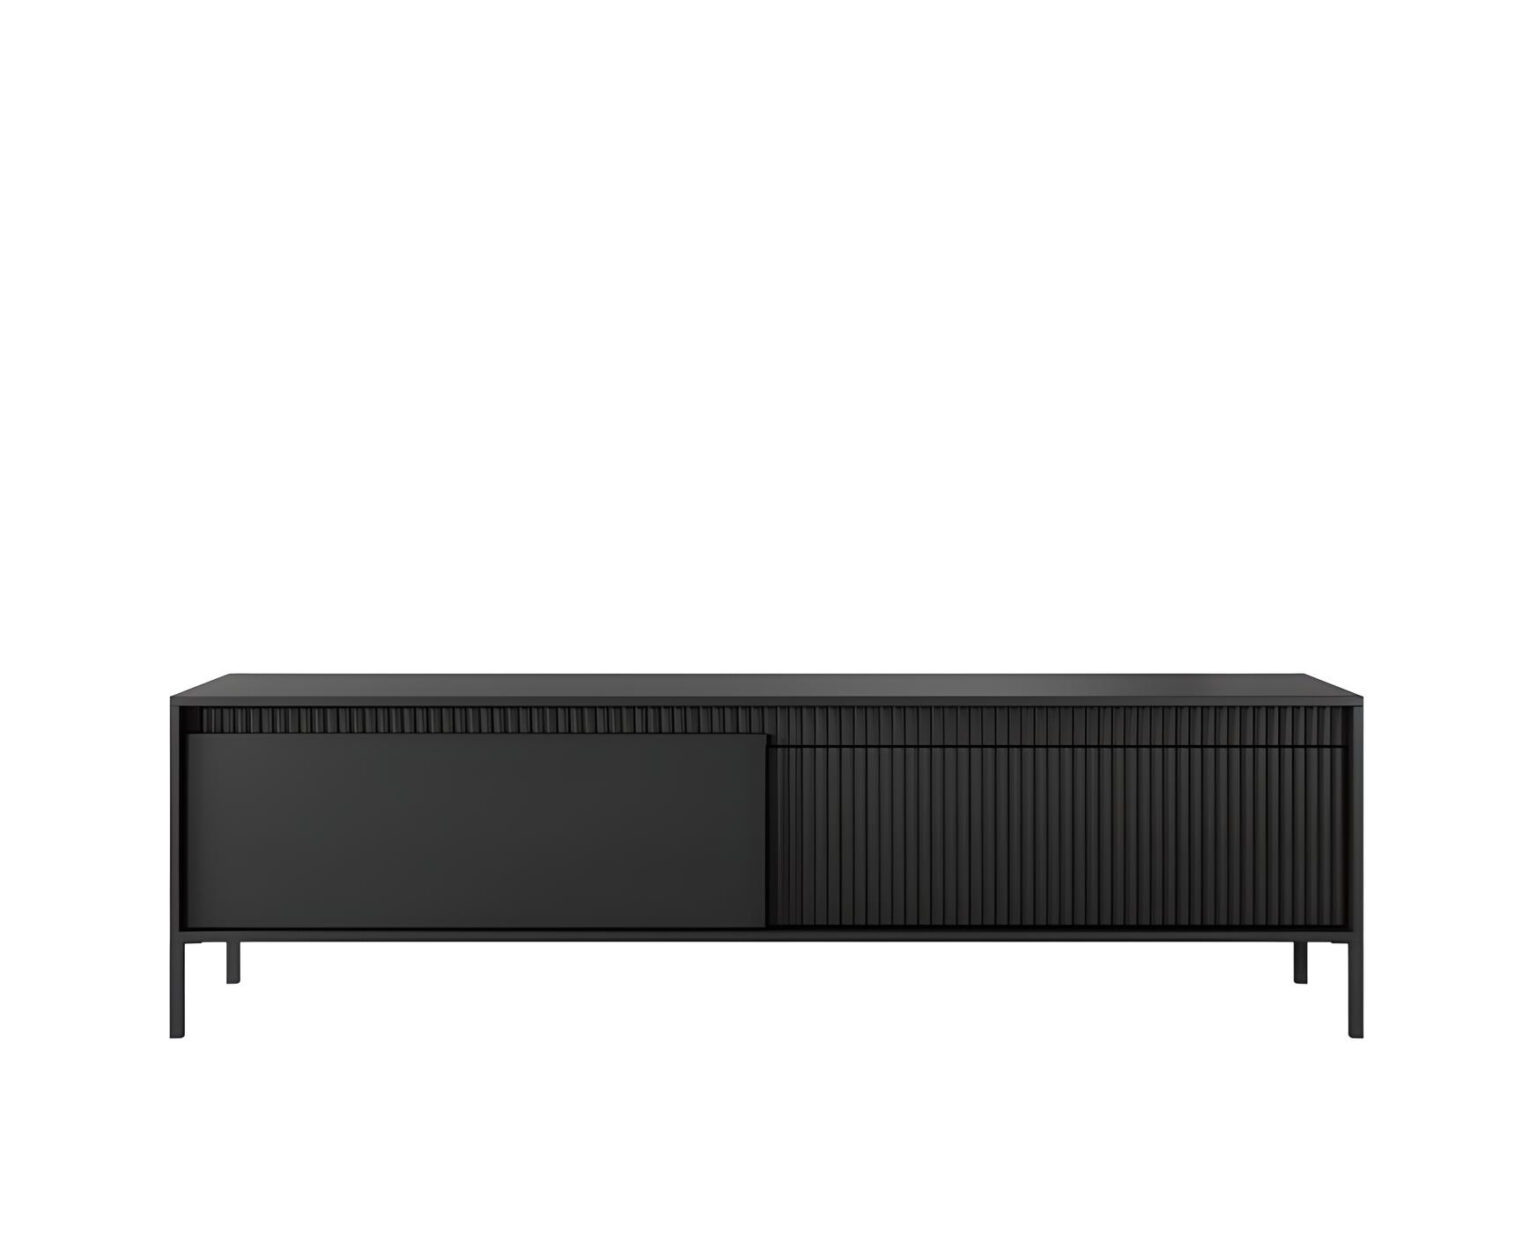 ROMANE meuble télé noir élégant de 187 cm avec 2 portes, 2 étagères pour un aménagement stylé